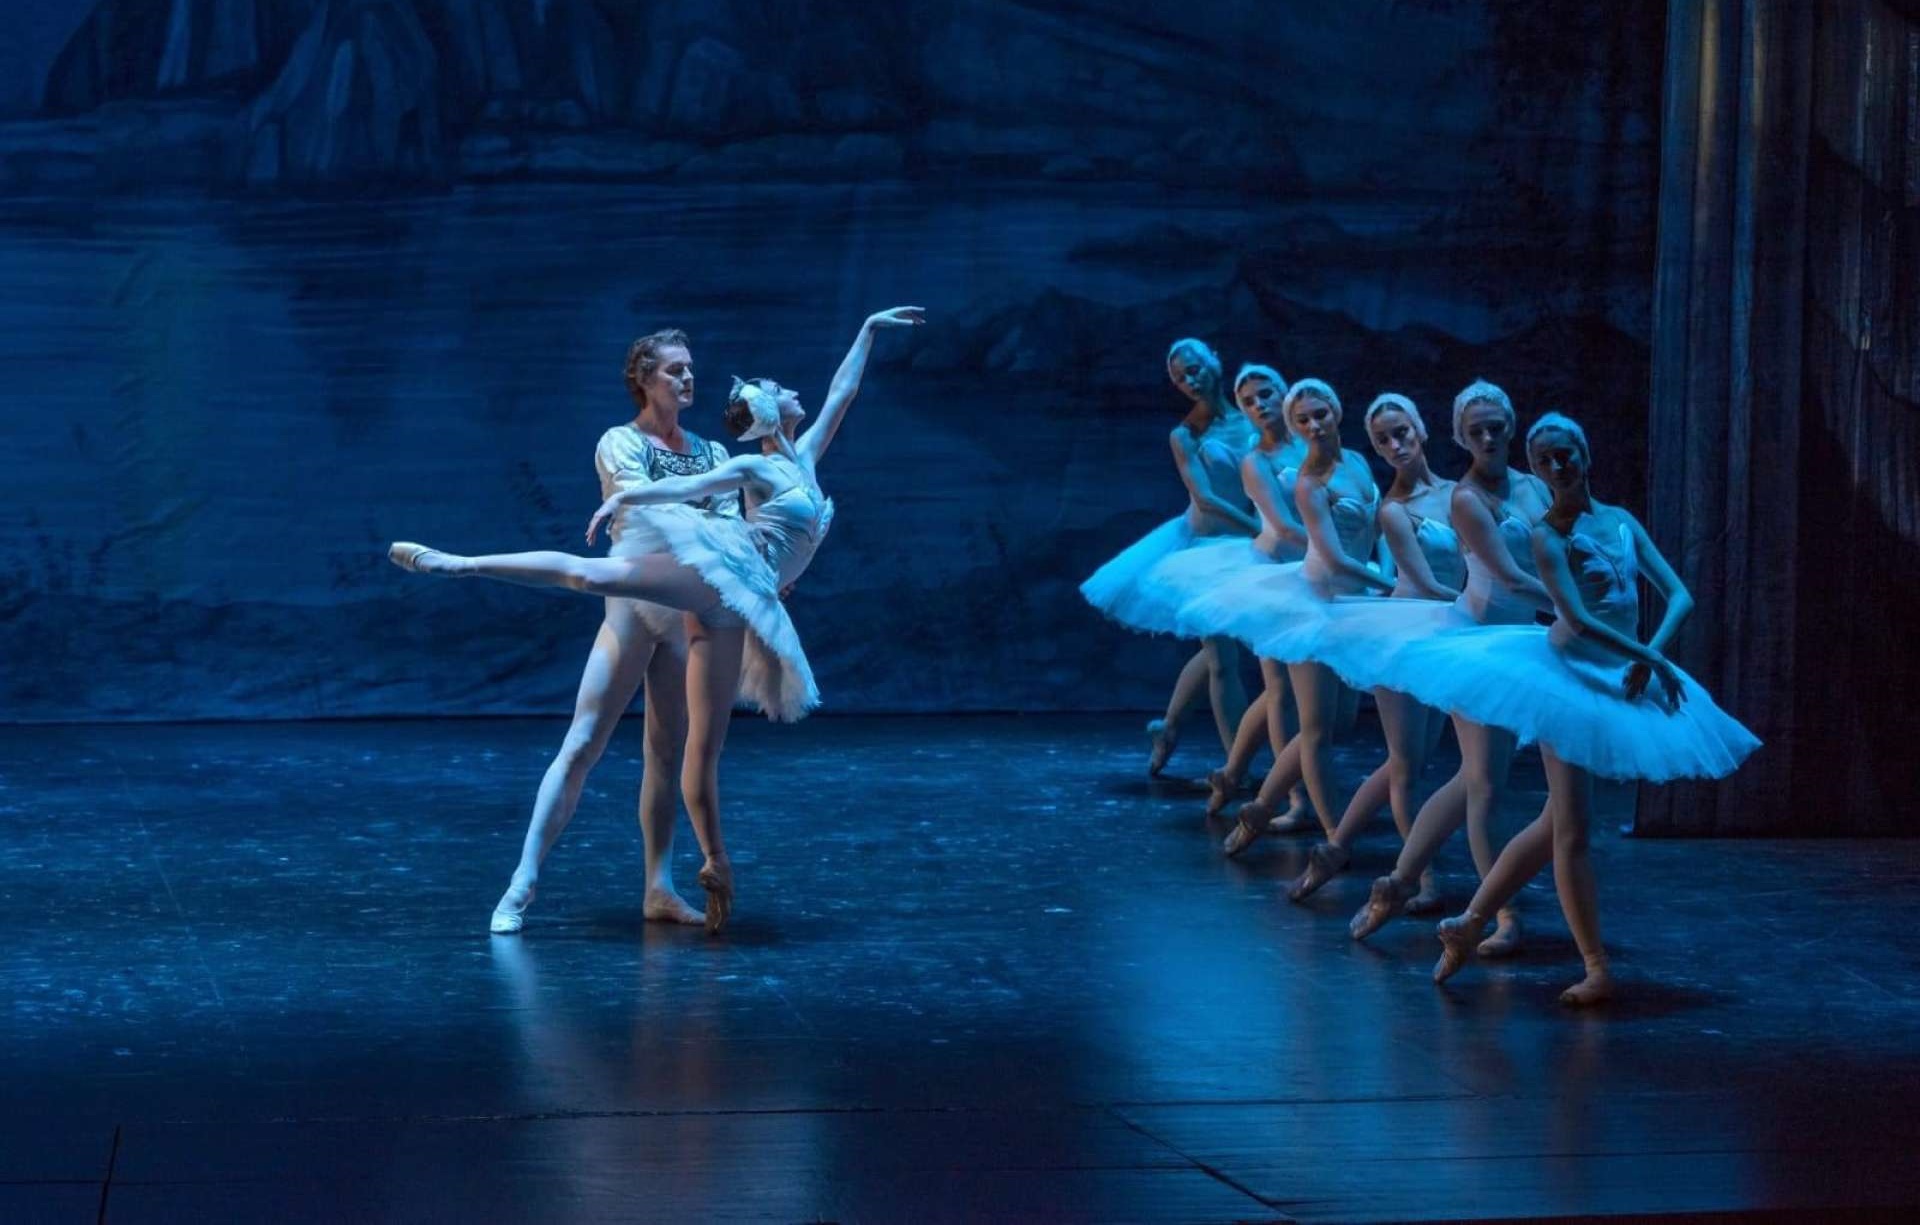 Cia de balé de St. Petersburg apresenta “O Lago Dos Cisnes" em Goiânia